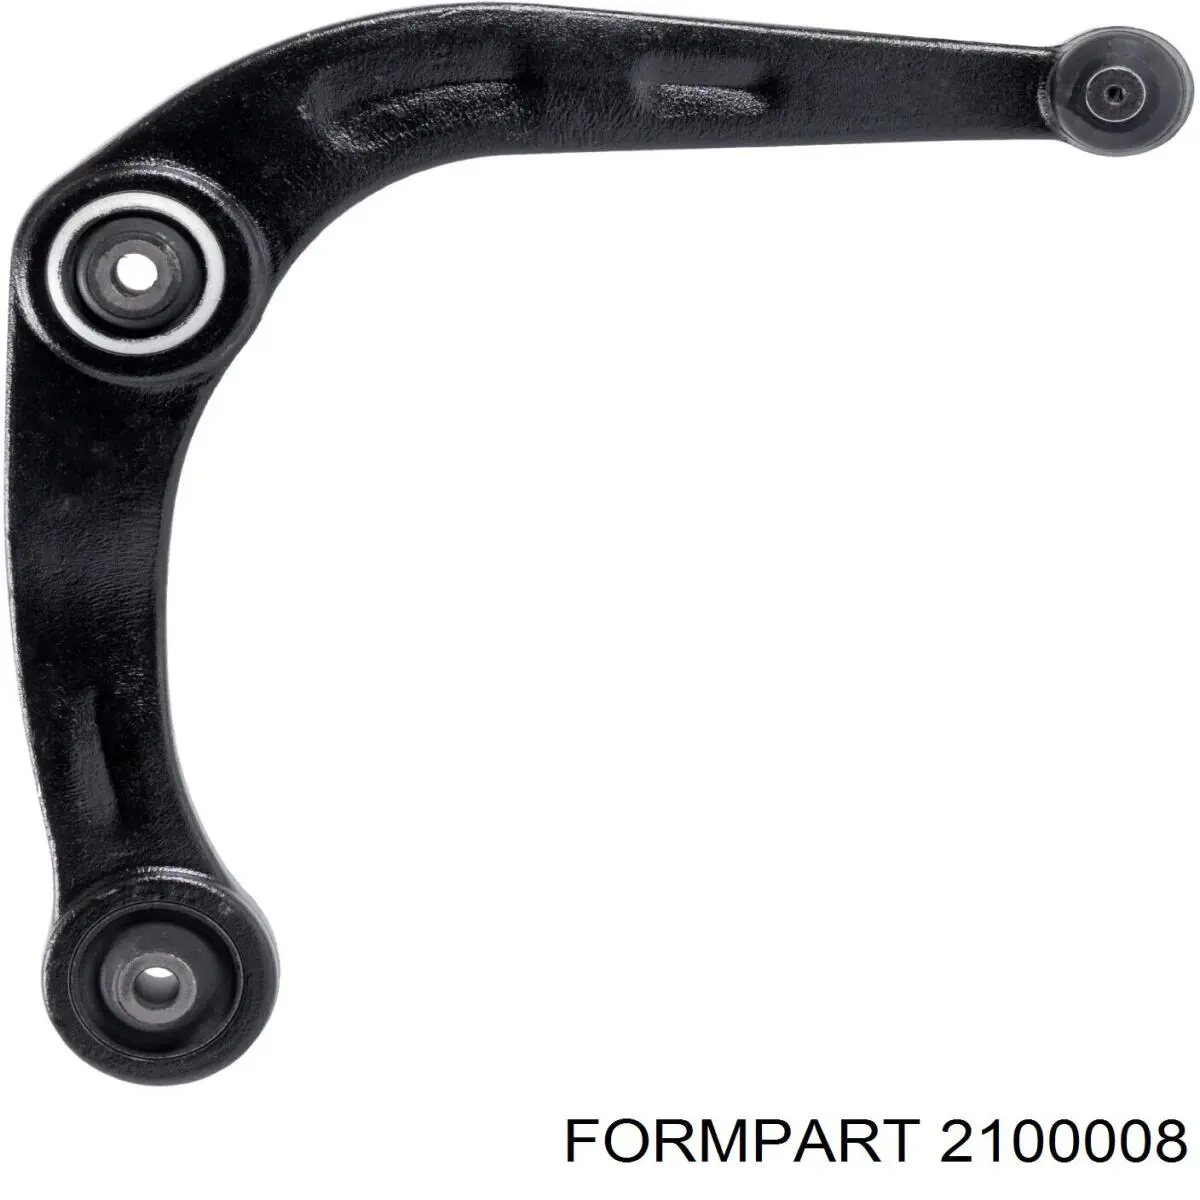 2100008 Formpart/Otoform silentblock de suspensión delantero inferior